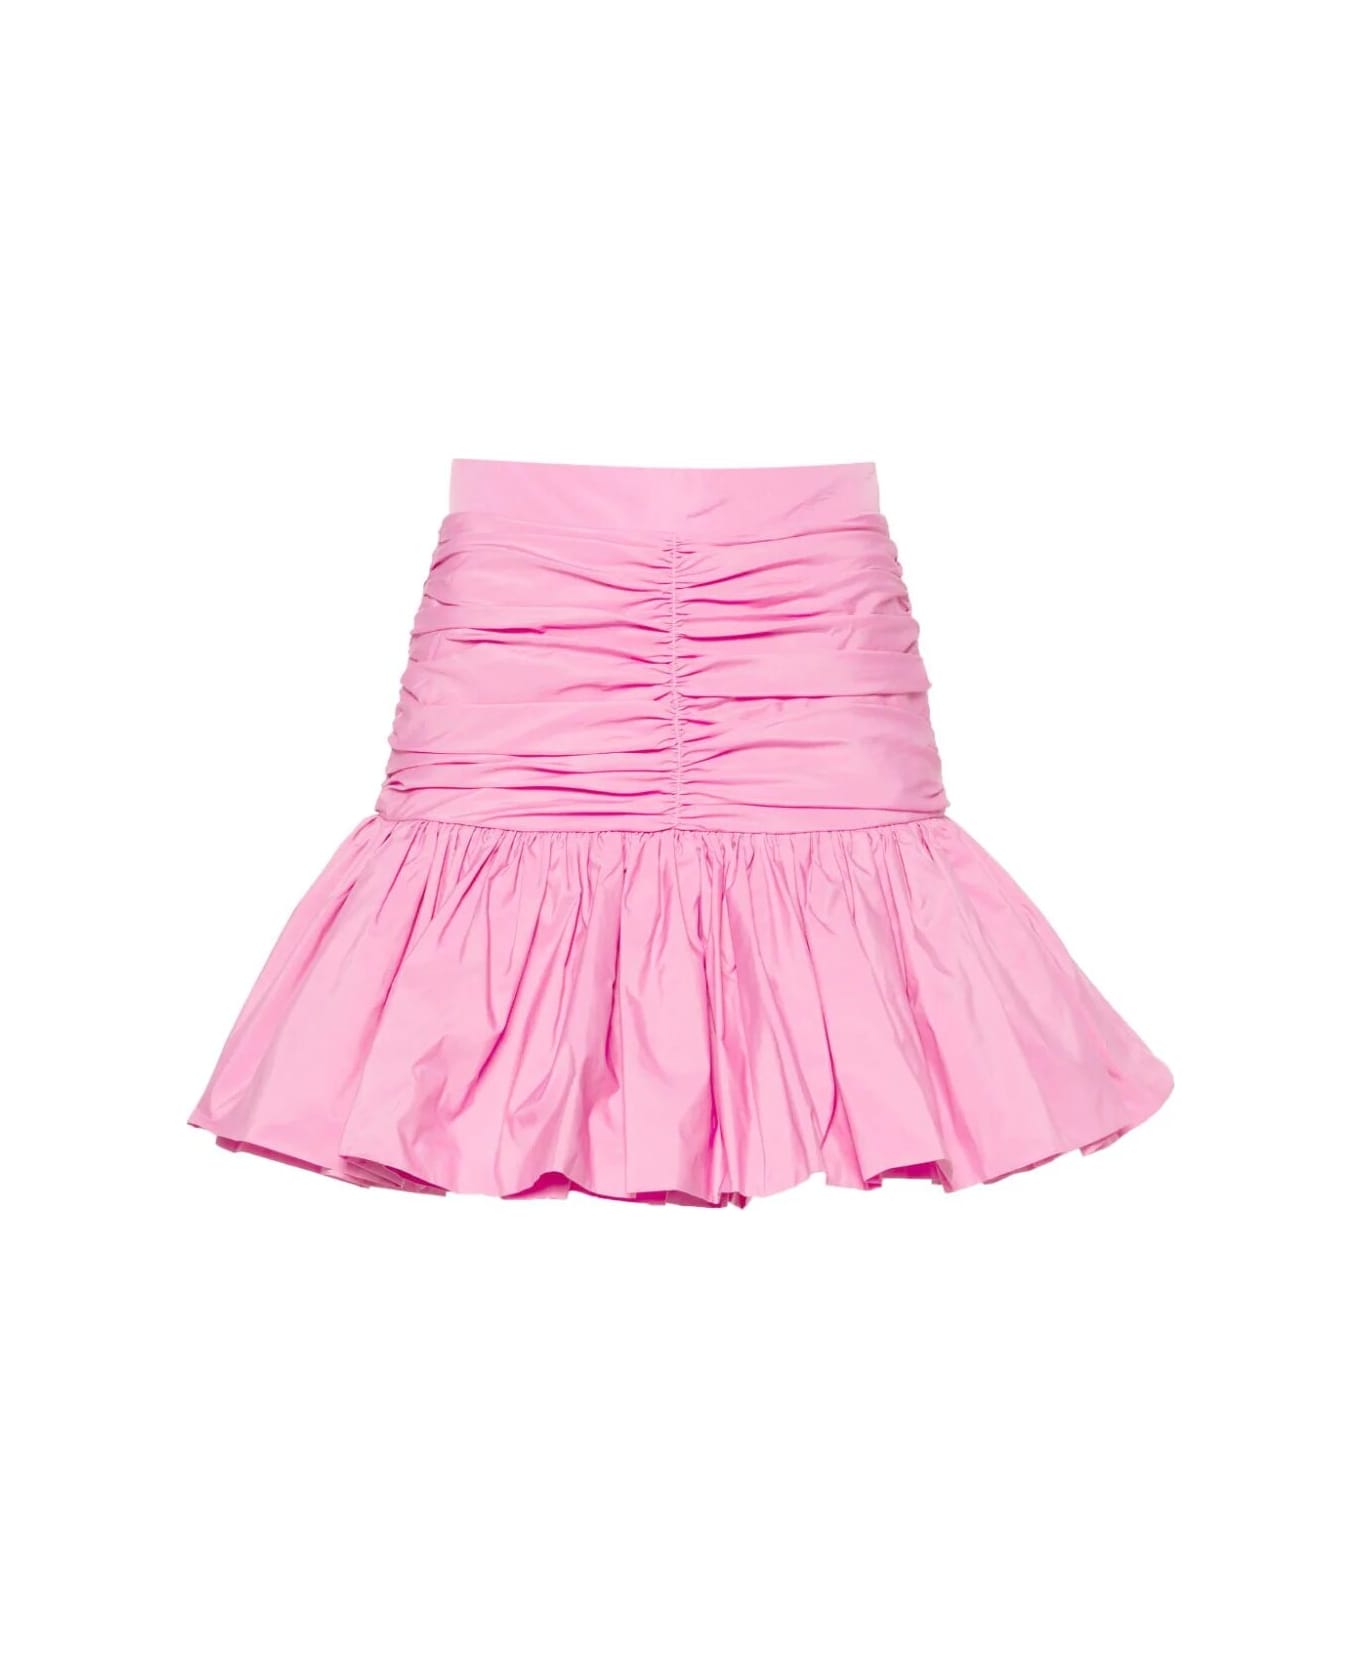 Patou Ruffle Mini Skirt - P Pink